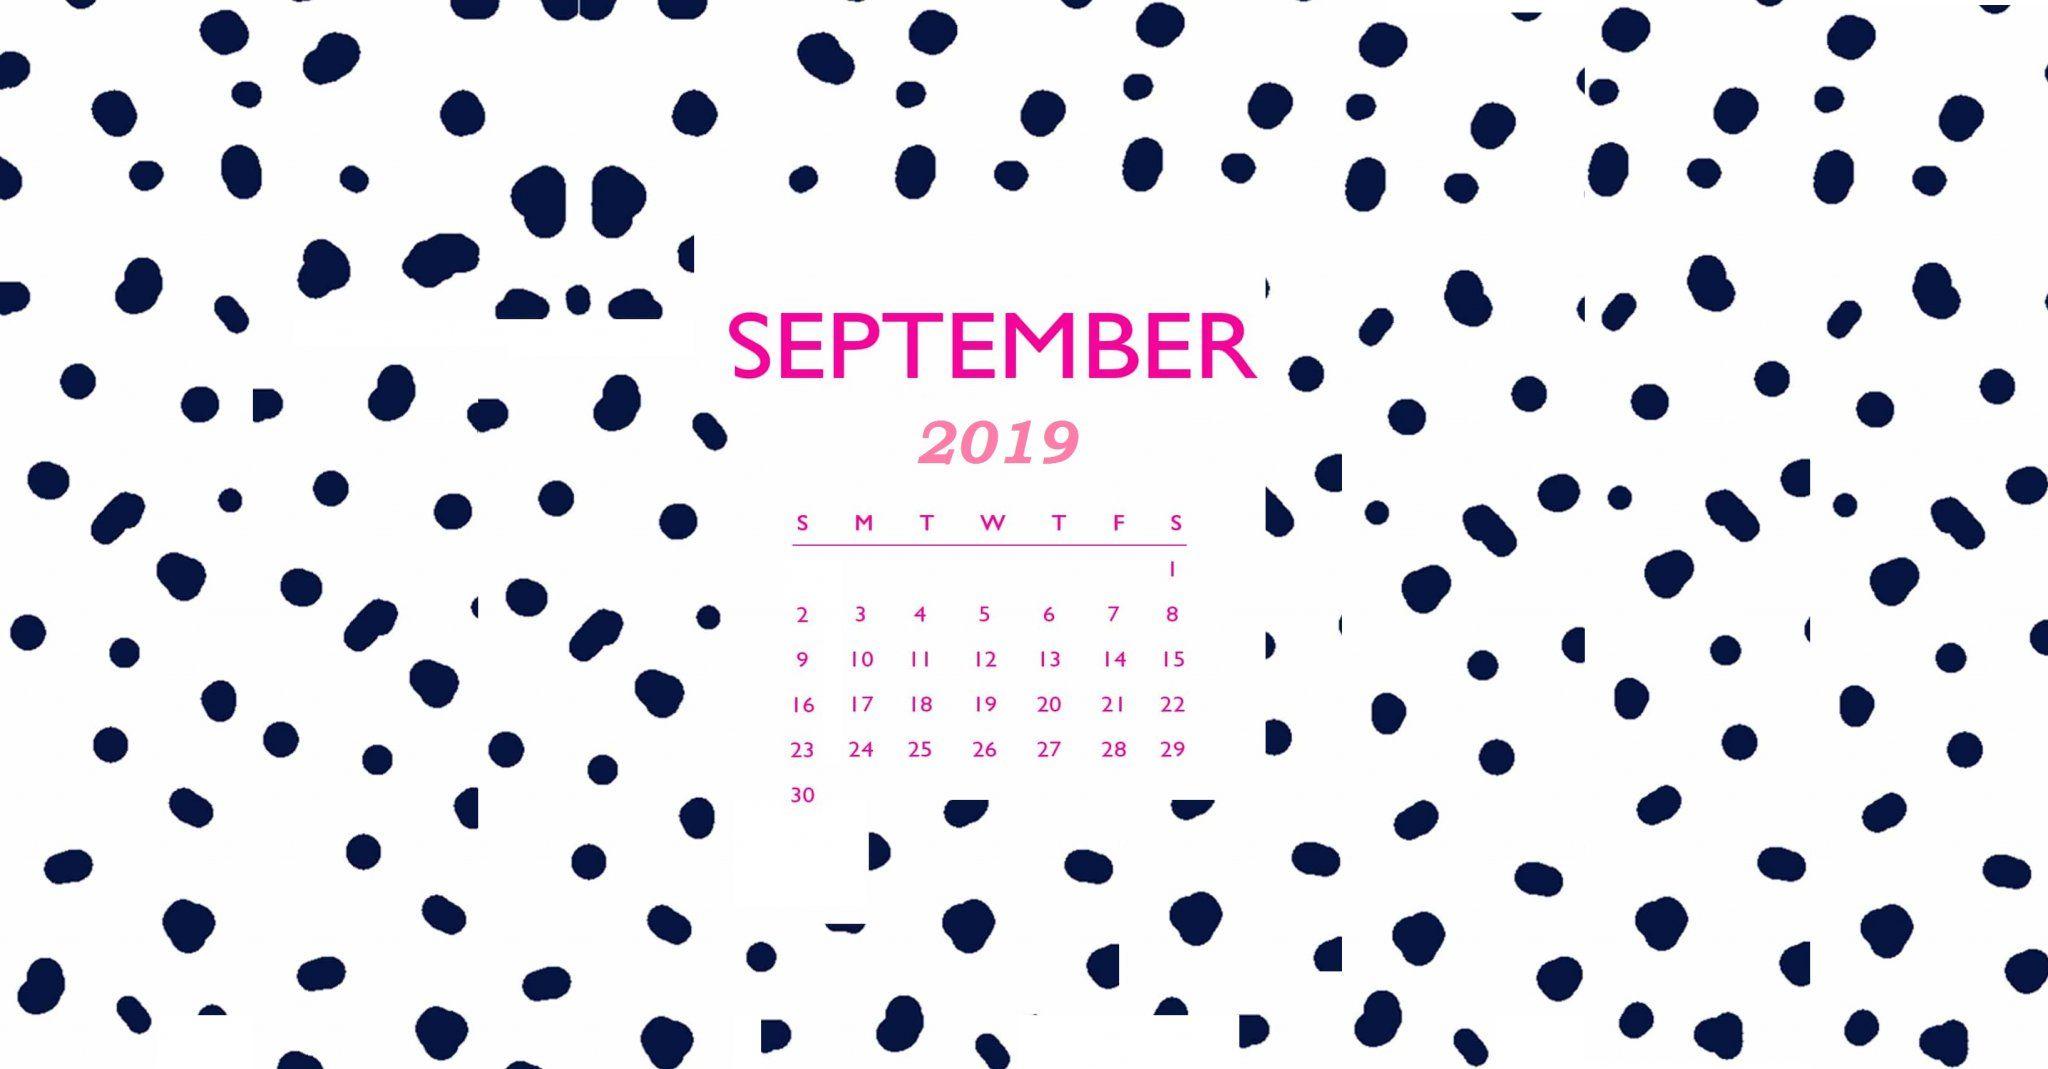 Free September 2019 HD Calendar Wallpapers